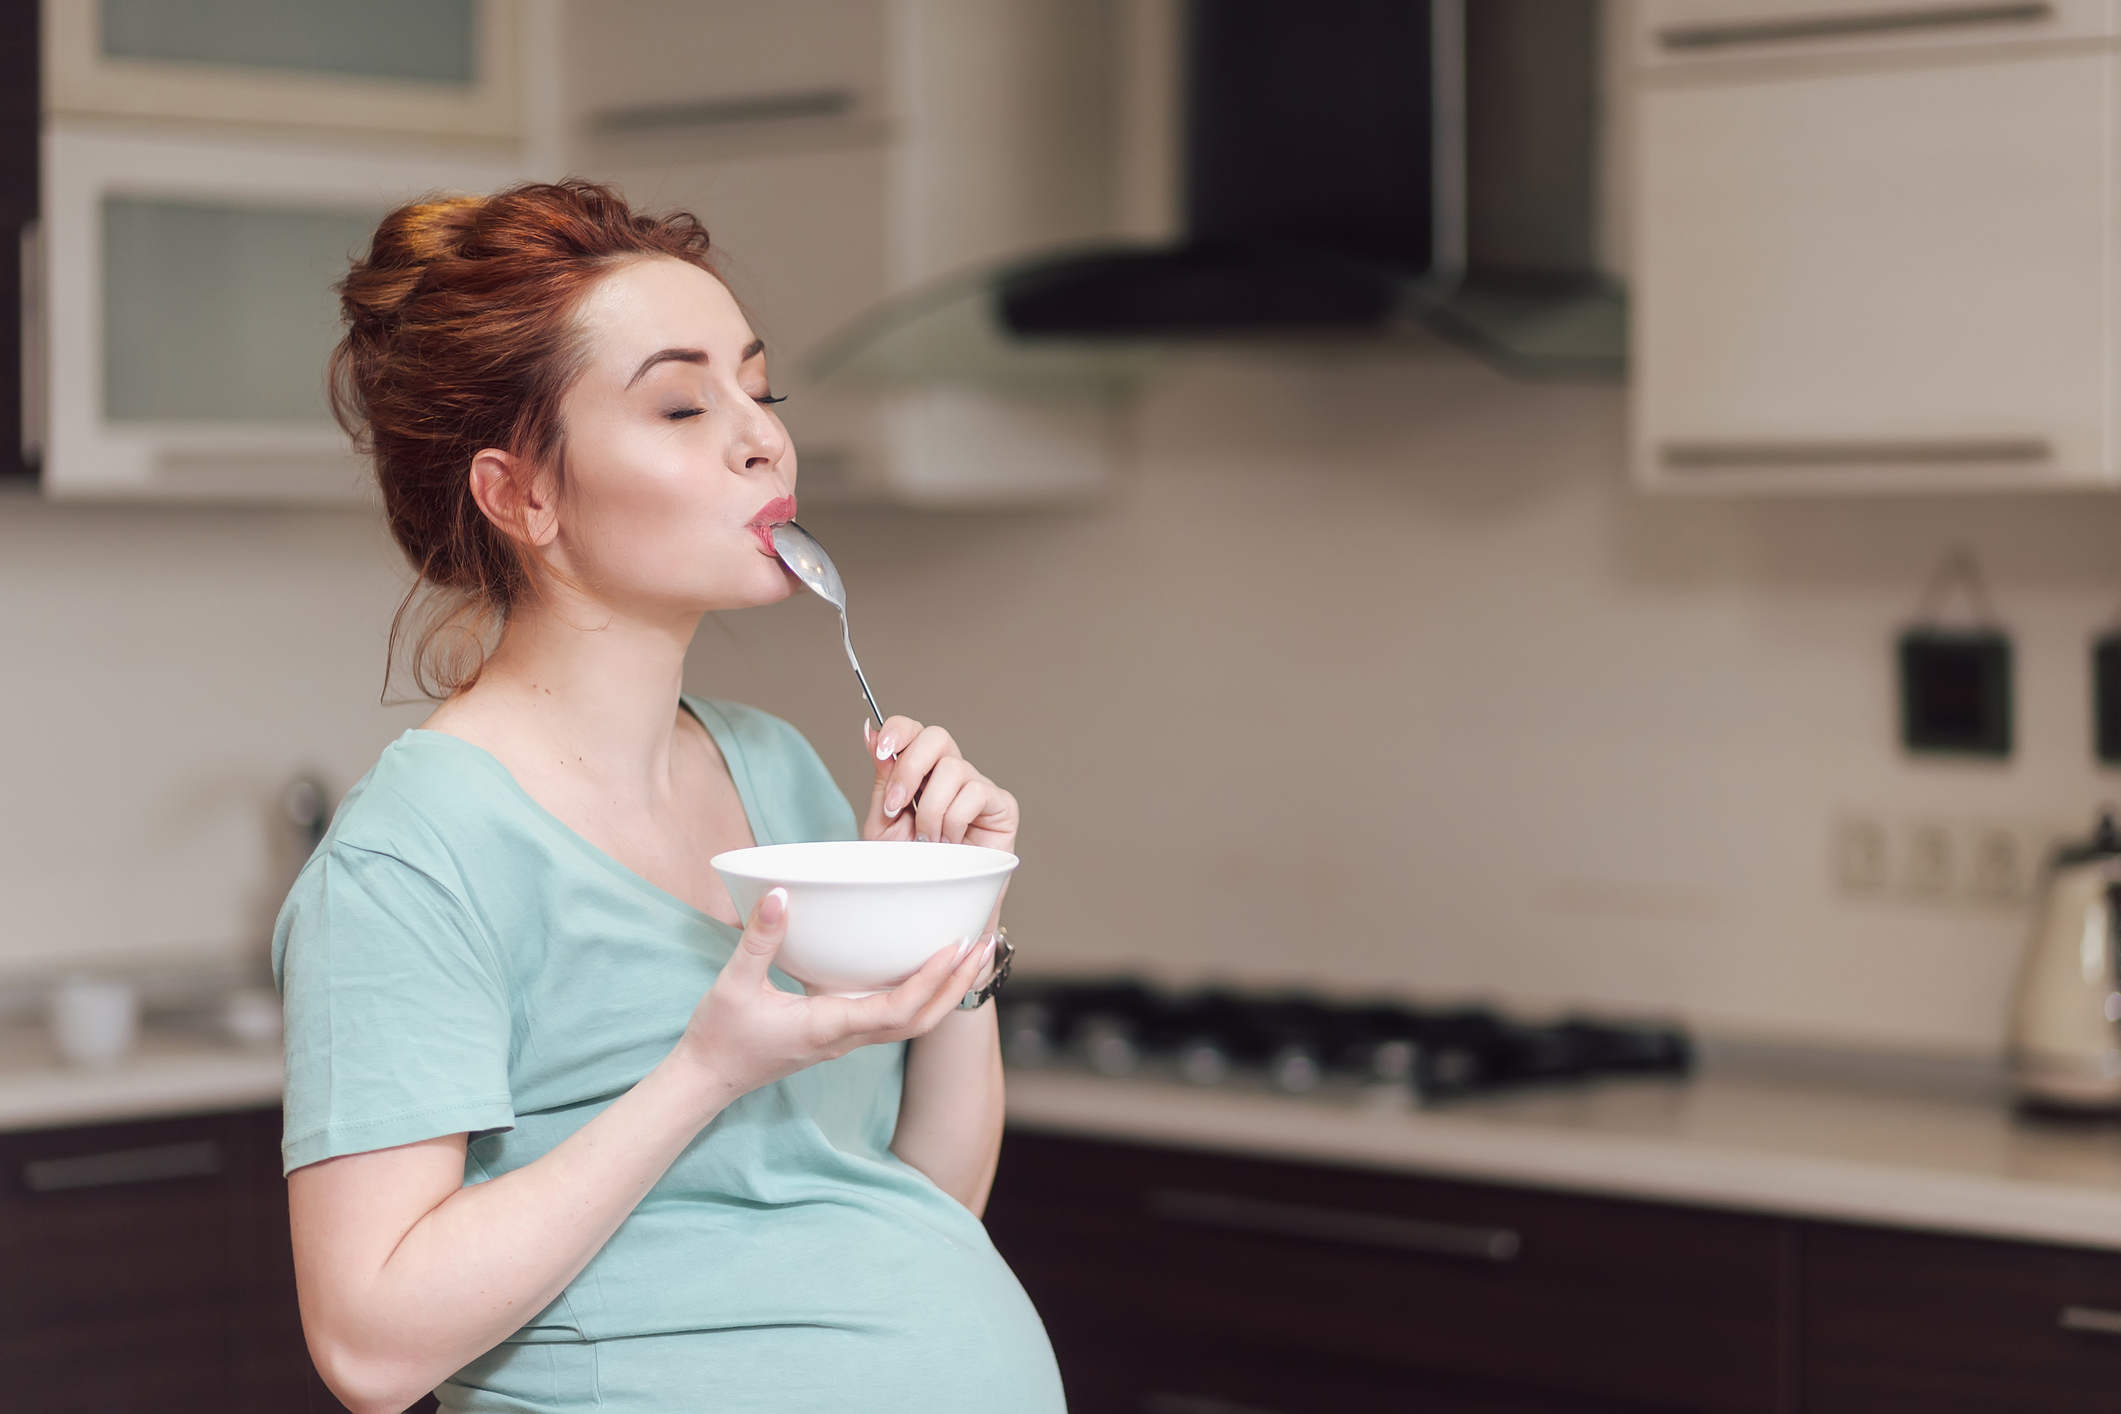 Какие продукты нельзя есть во время беременности